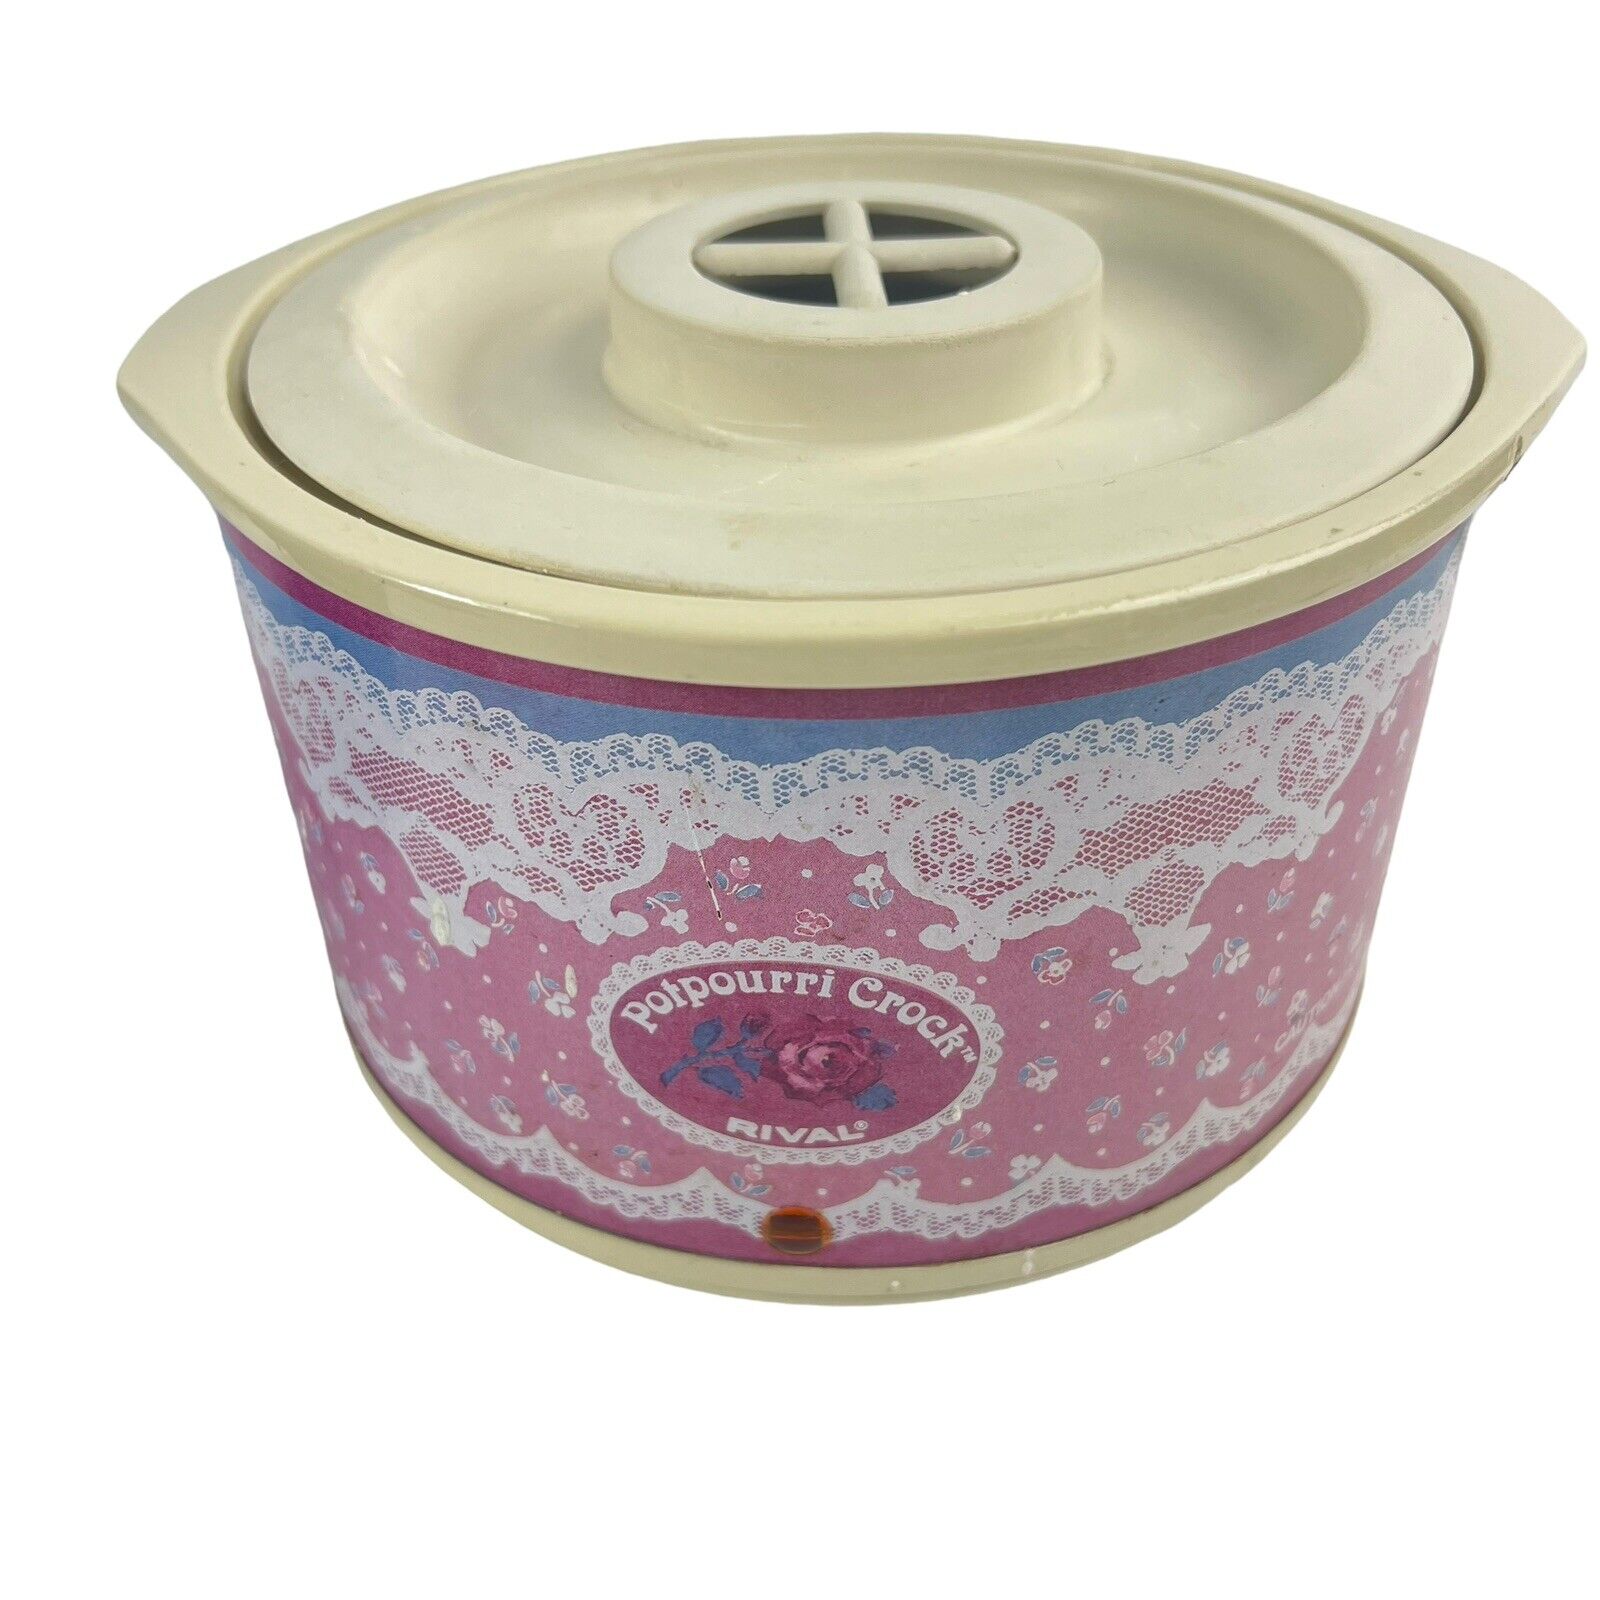 1987 Vintage Rival Potpourri Crock Electric Simmering Pot Pink White Lace 3207